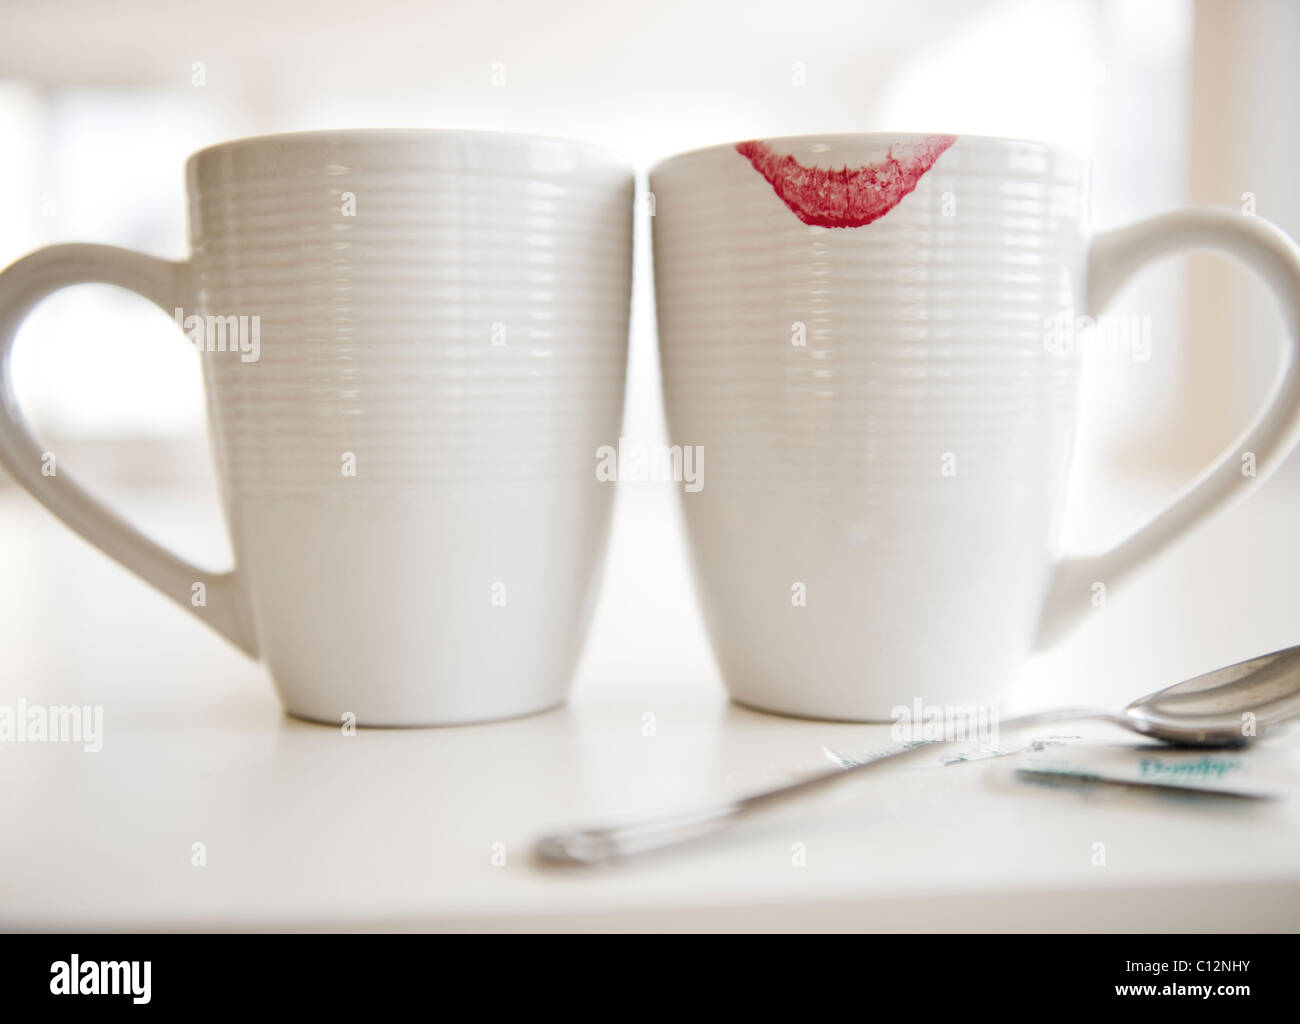 USA, New Jersey, Jersey City, Nahaufnahme von Kaffeetassen, einer mit rotem Lippenstift Zeichen am Rand Stockfoto